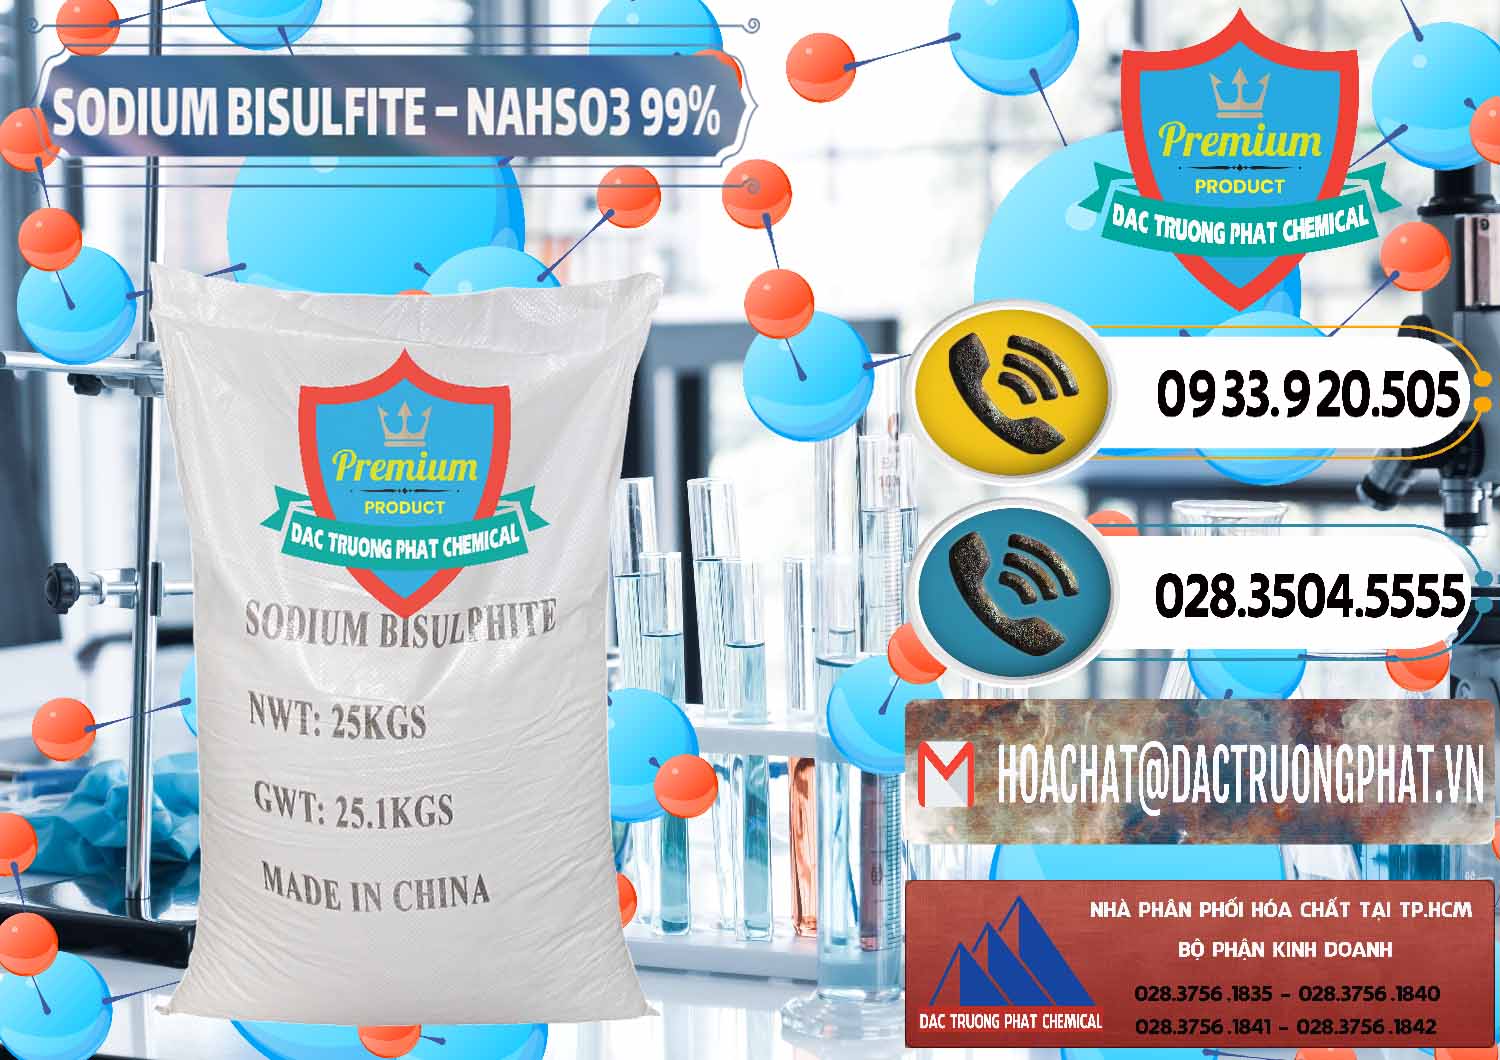 Nơi cung ứng - bán Sodium Bisulfite – NAHSO3 Trung Quốc China - 0140 - Nơi bán và phân phối hóa chất tại TP.HCM - hoachatdetnhuom.vn